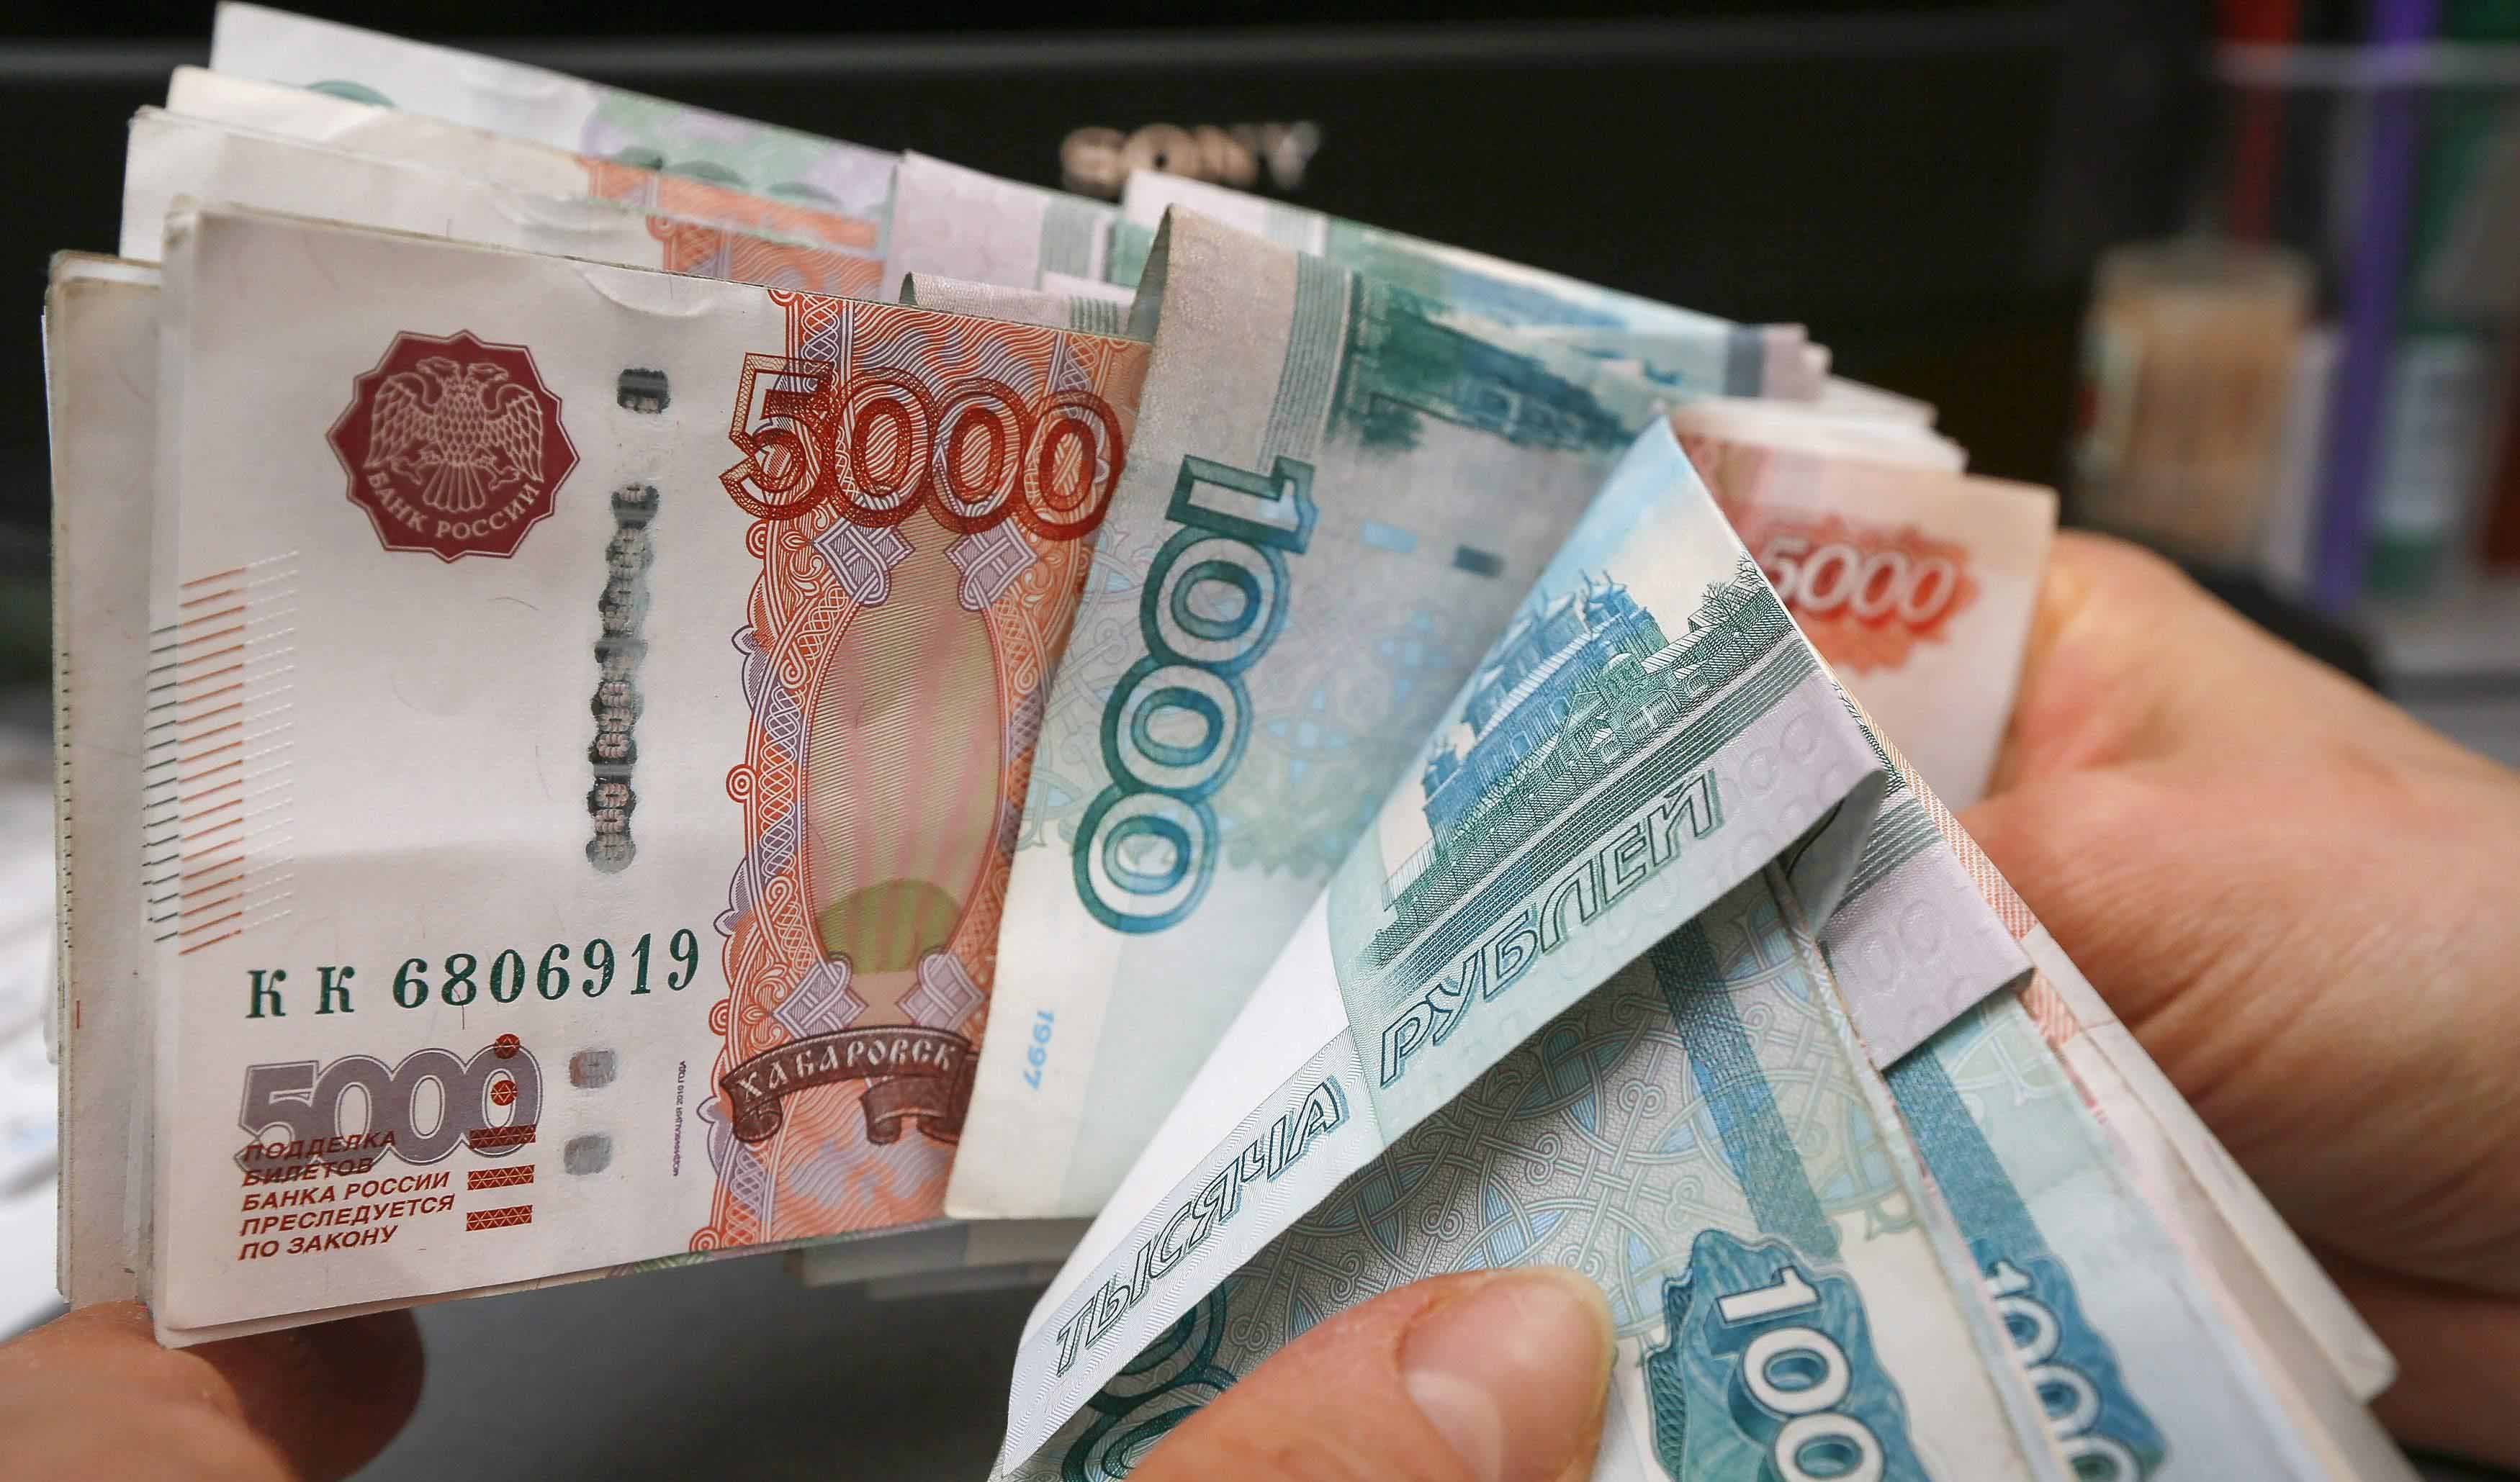 دستور دولت روسیه به صادرکنندگان برای تبدیل ارزهای خارجی به روبل